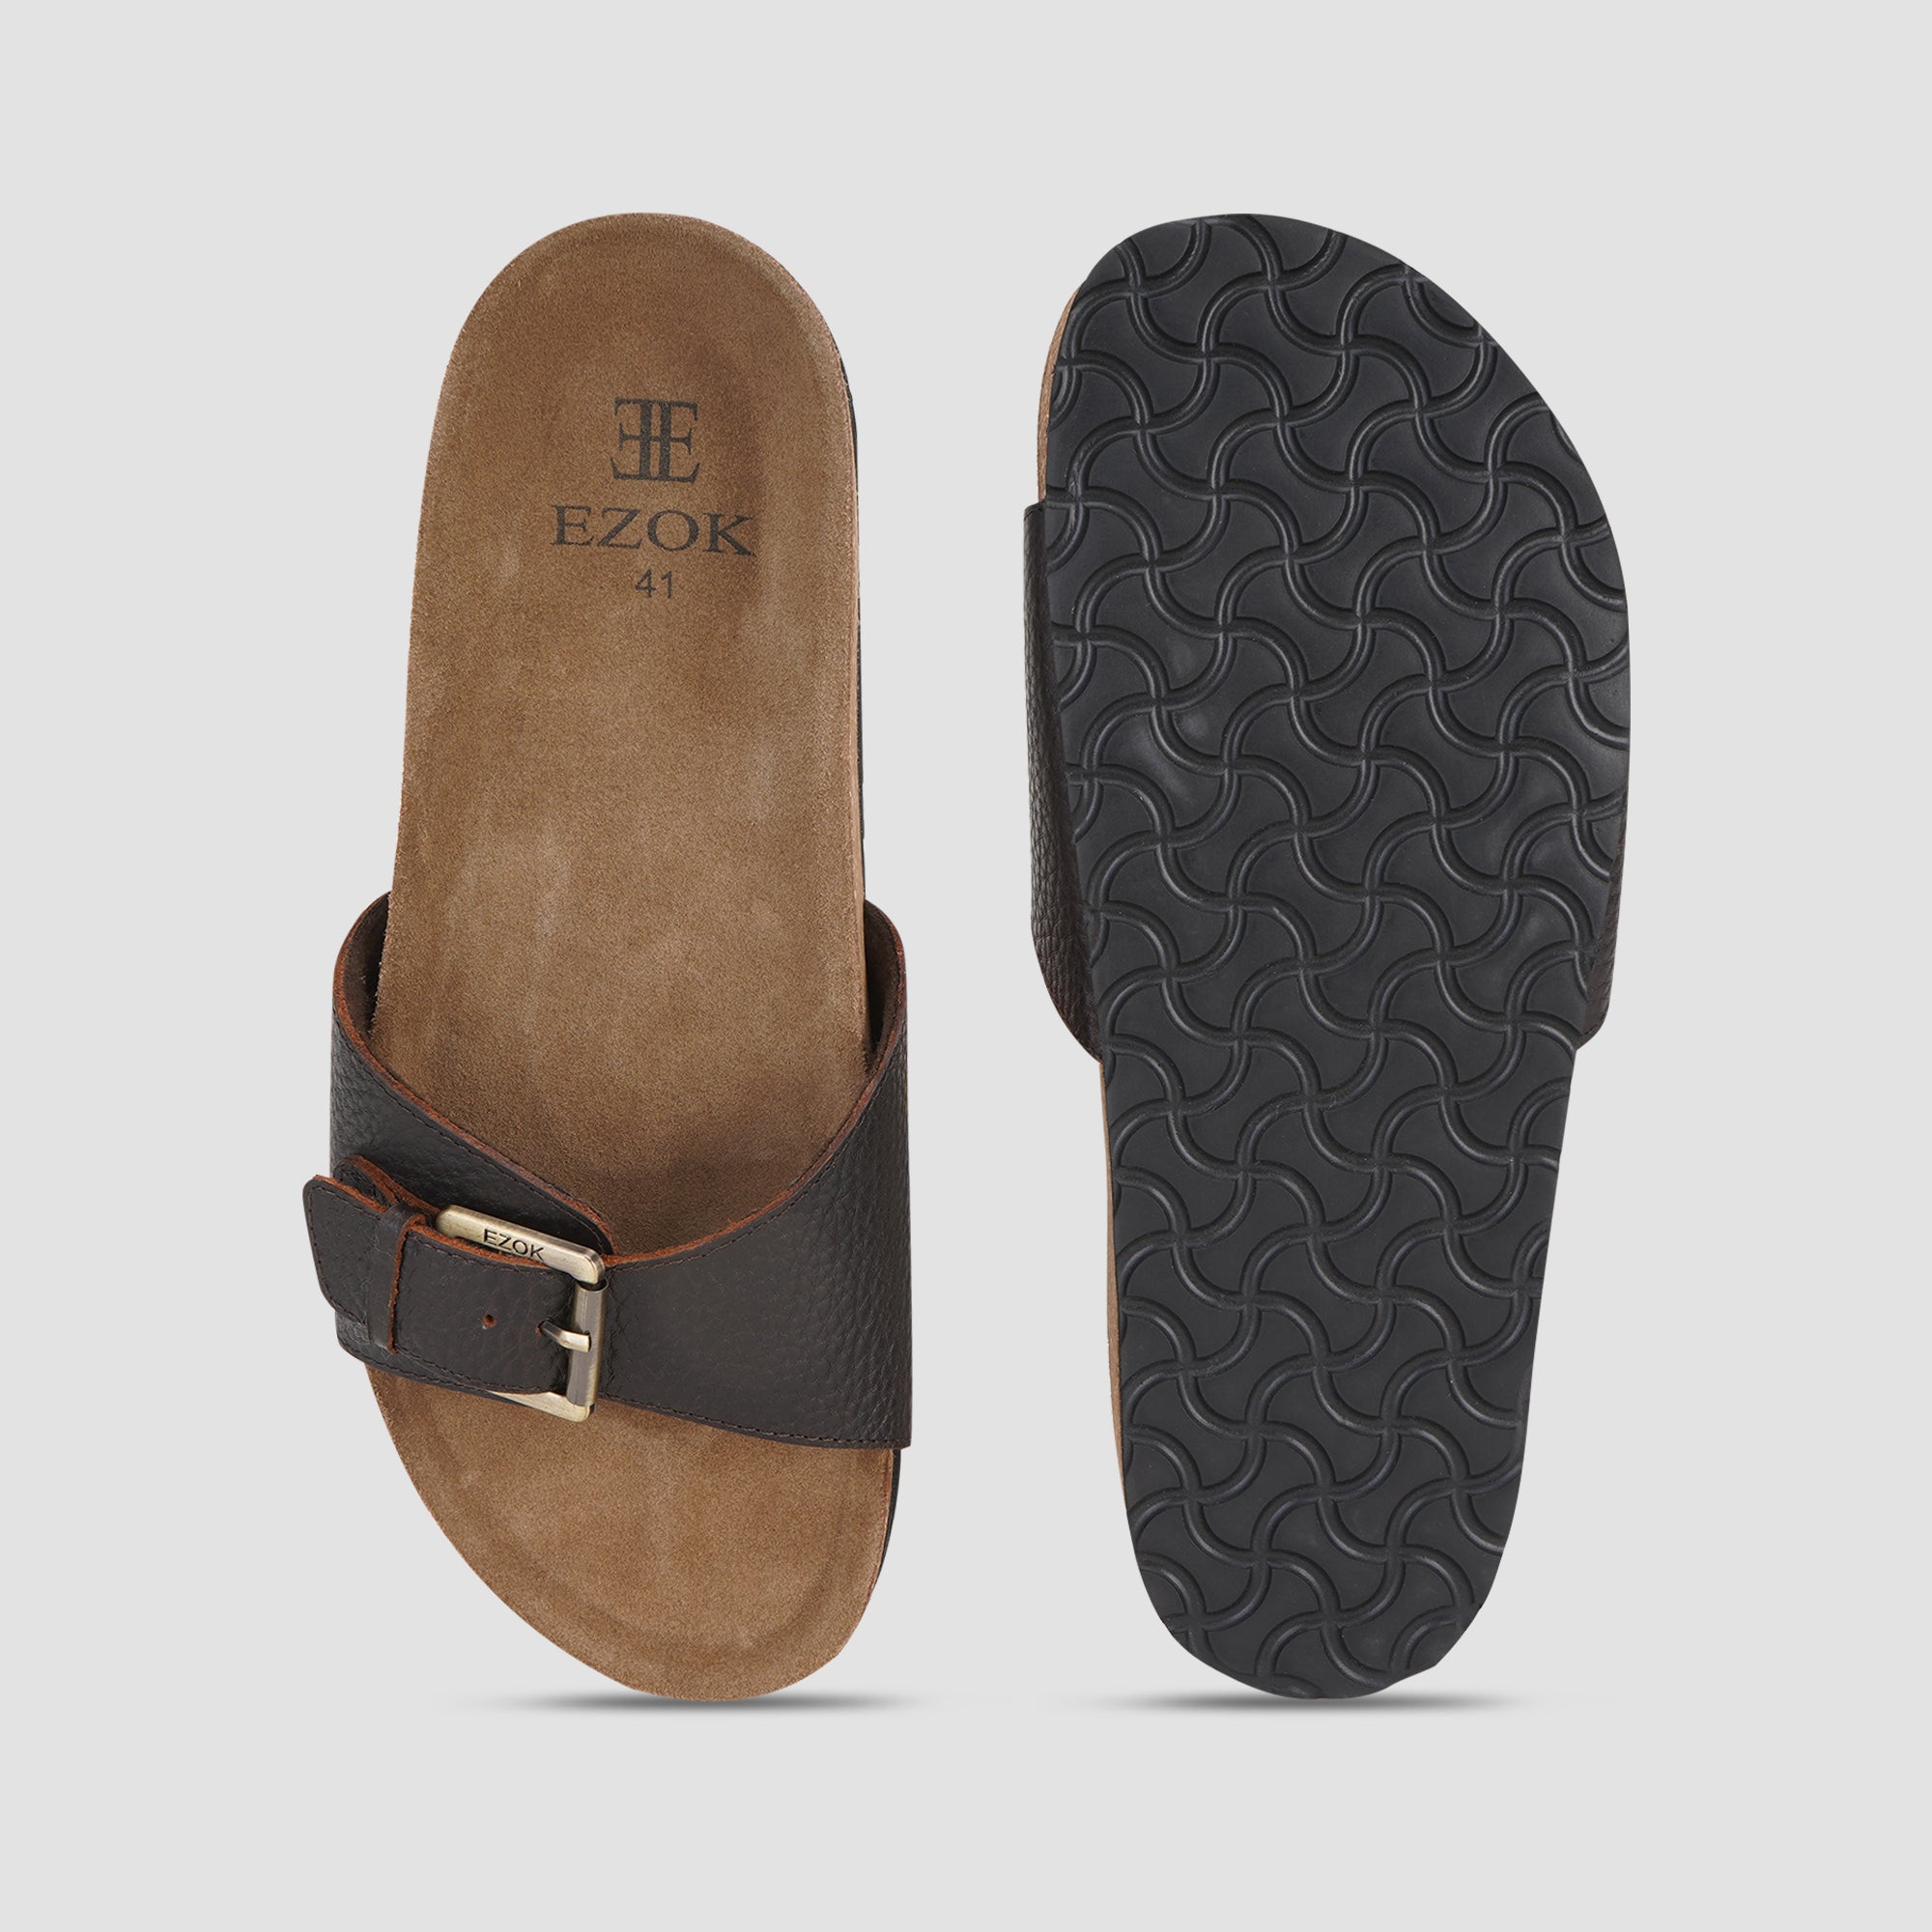 Ezok Brown Leather Sandal For Men